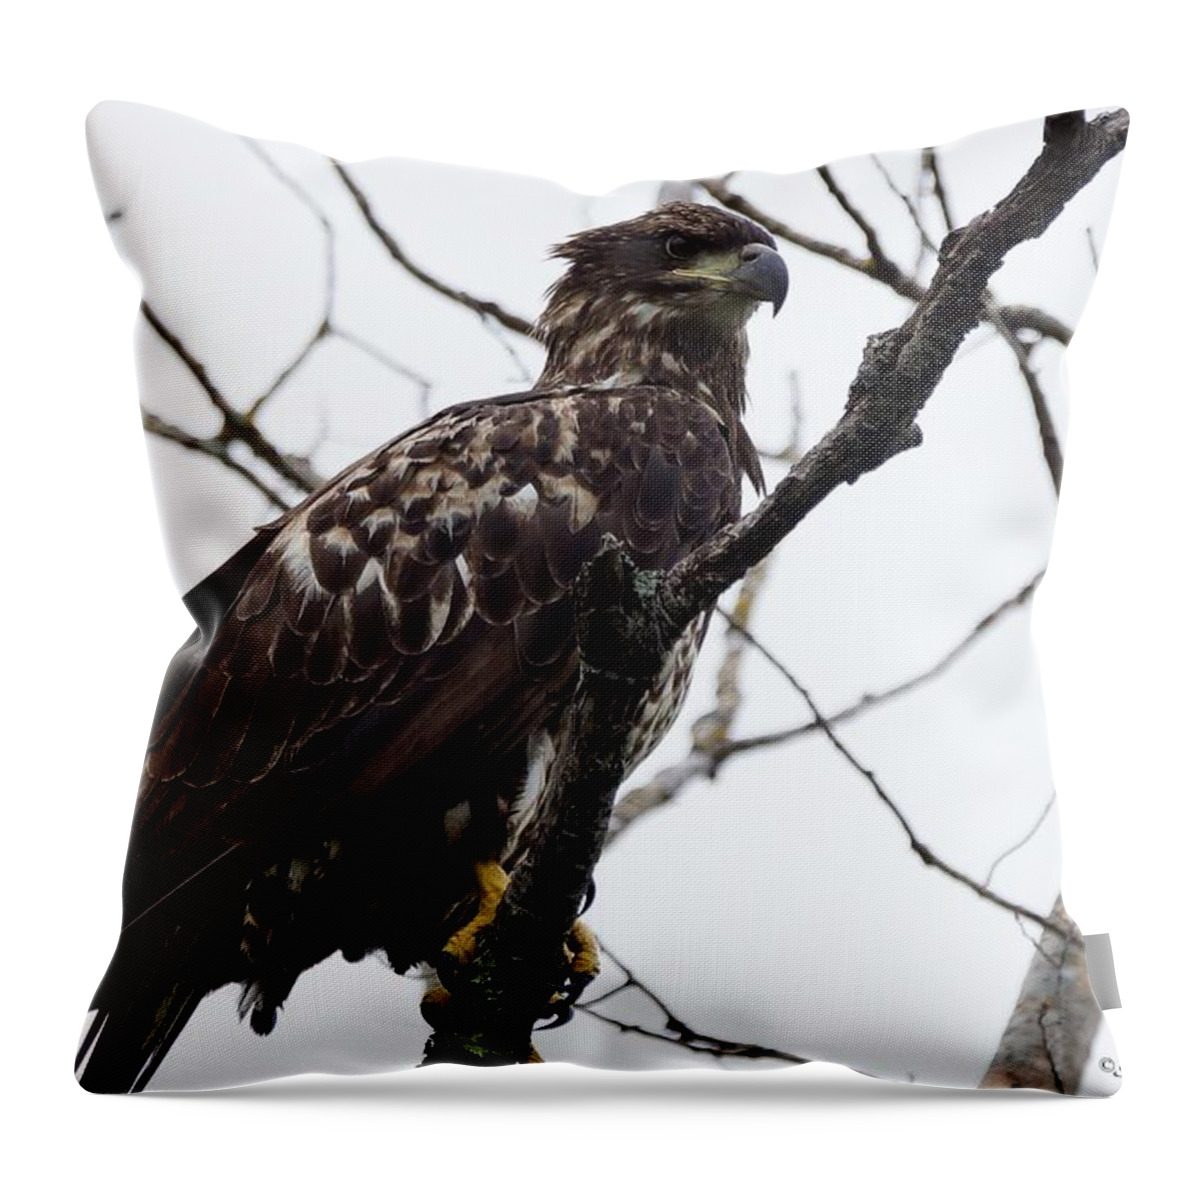 Bird Throw Pillow featuring the photograph Juvenile Eagle 2 by Steven Clipperton